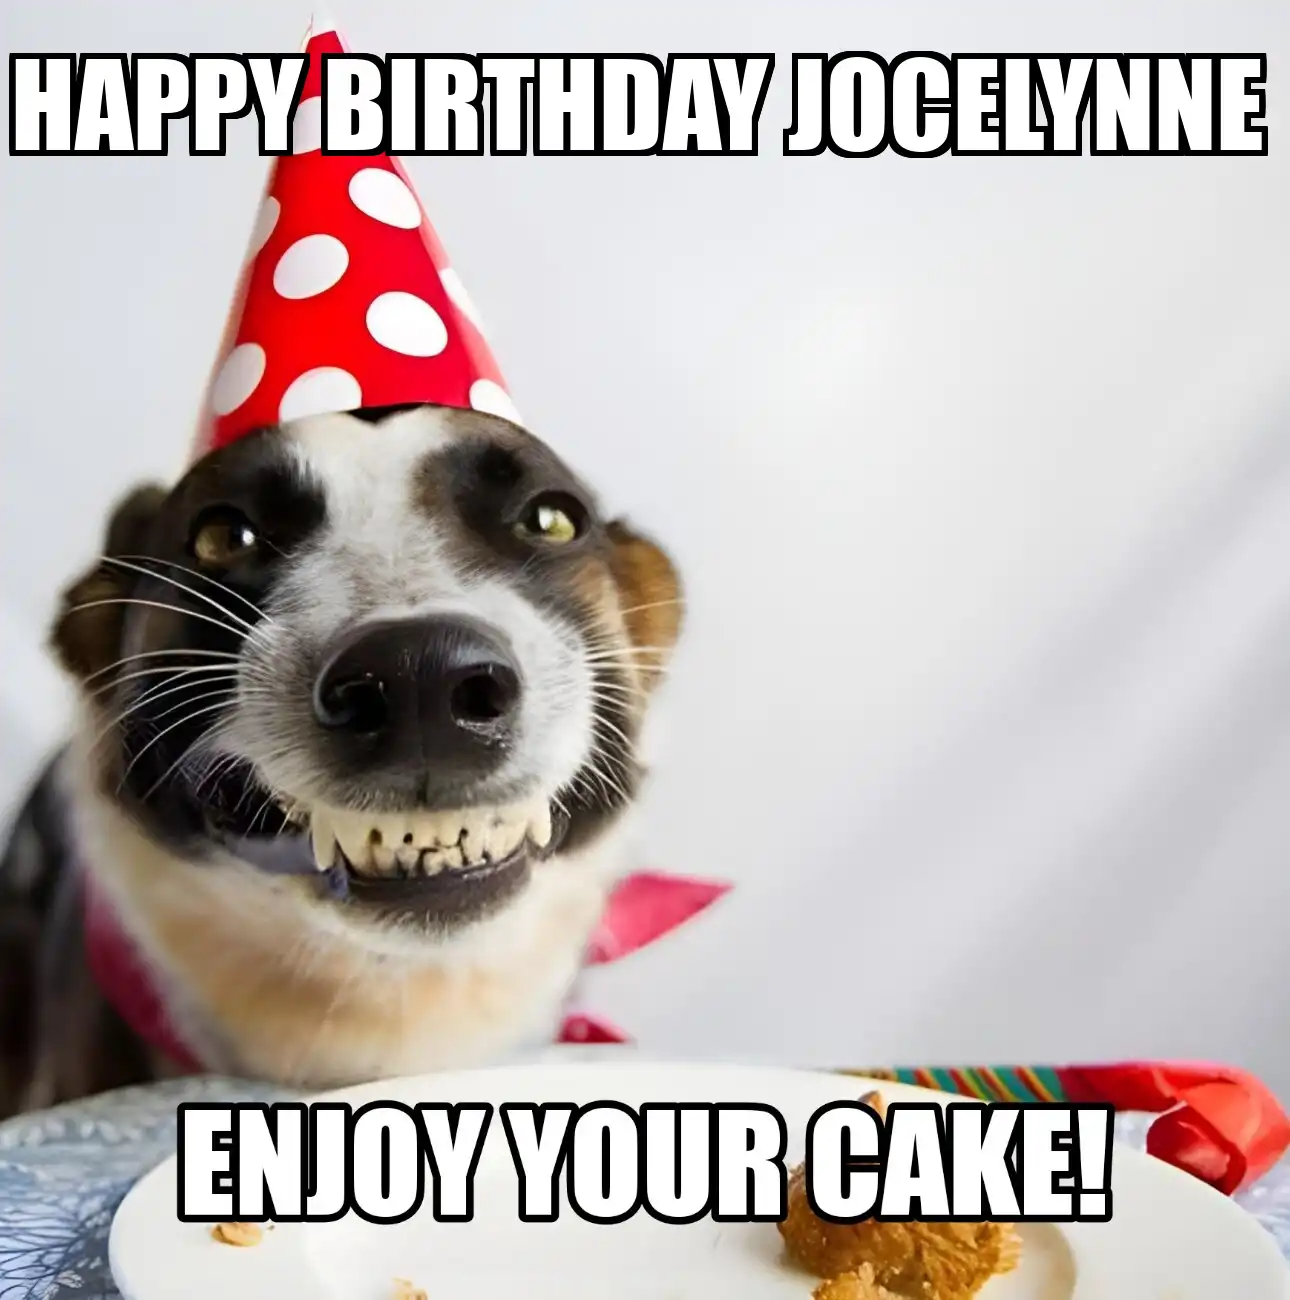 Happy Birthday Jocelynne Enjoy Your Cake Dog Meme